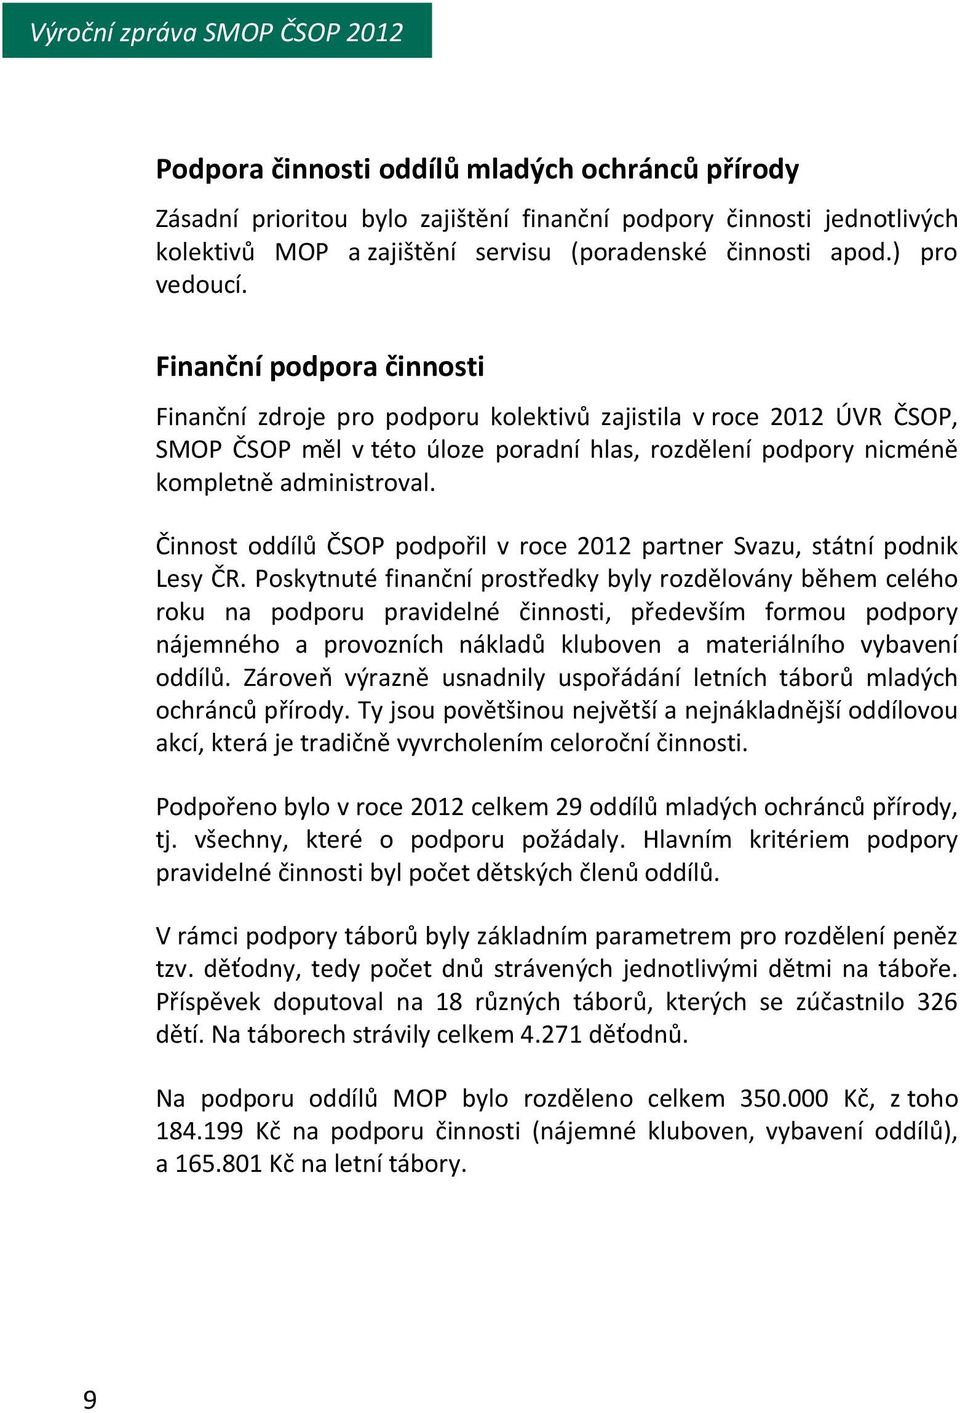 Činnost oddílů ČSOP podpořil v roce 2012 partner Svazu, státní podnik Lesy ČR.